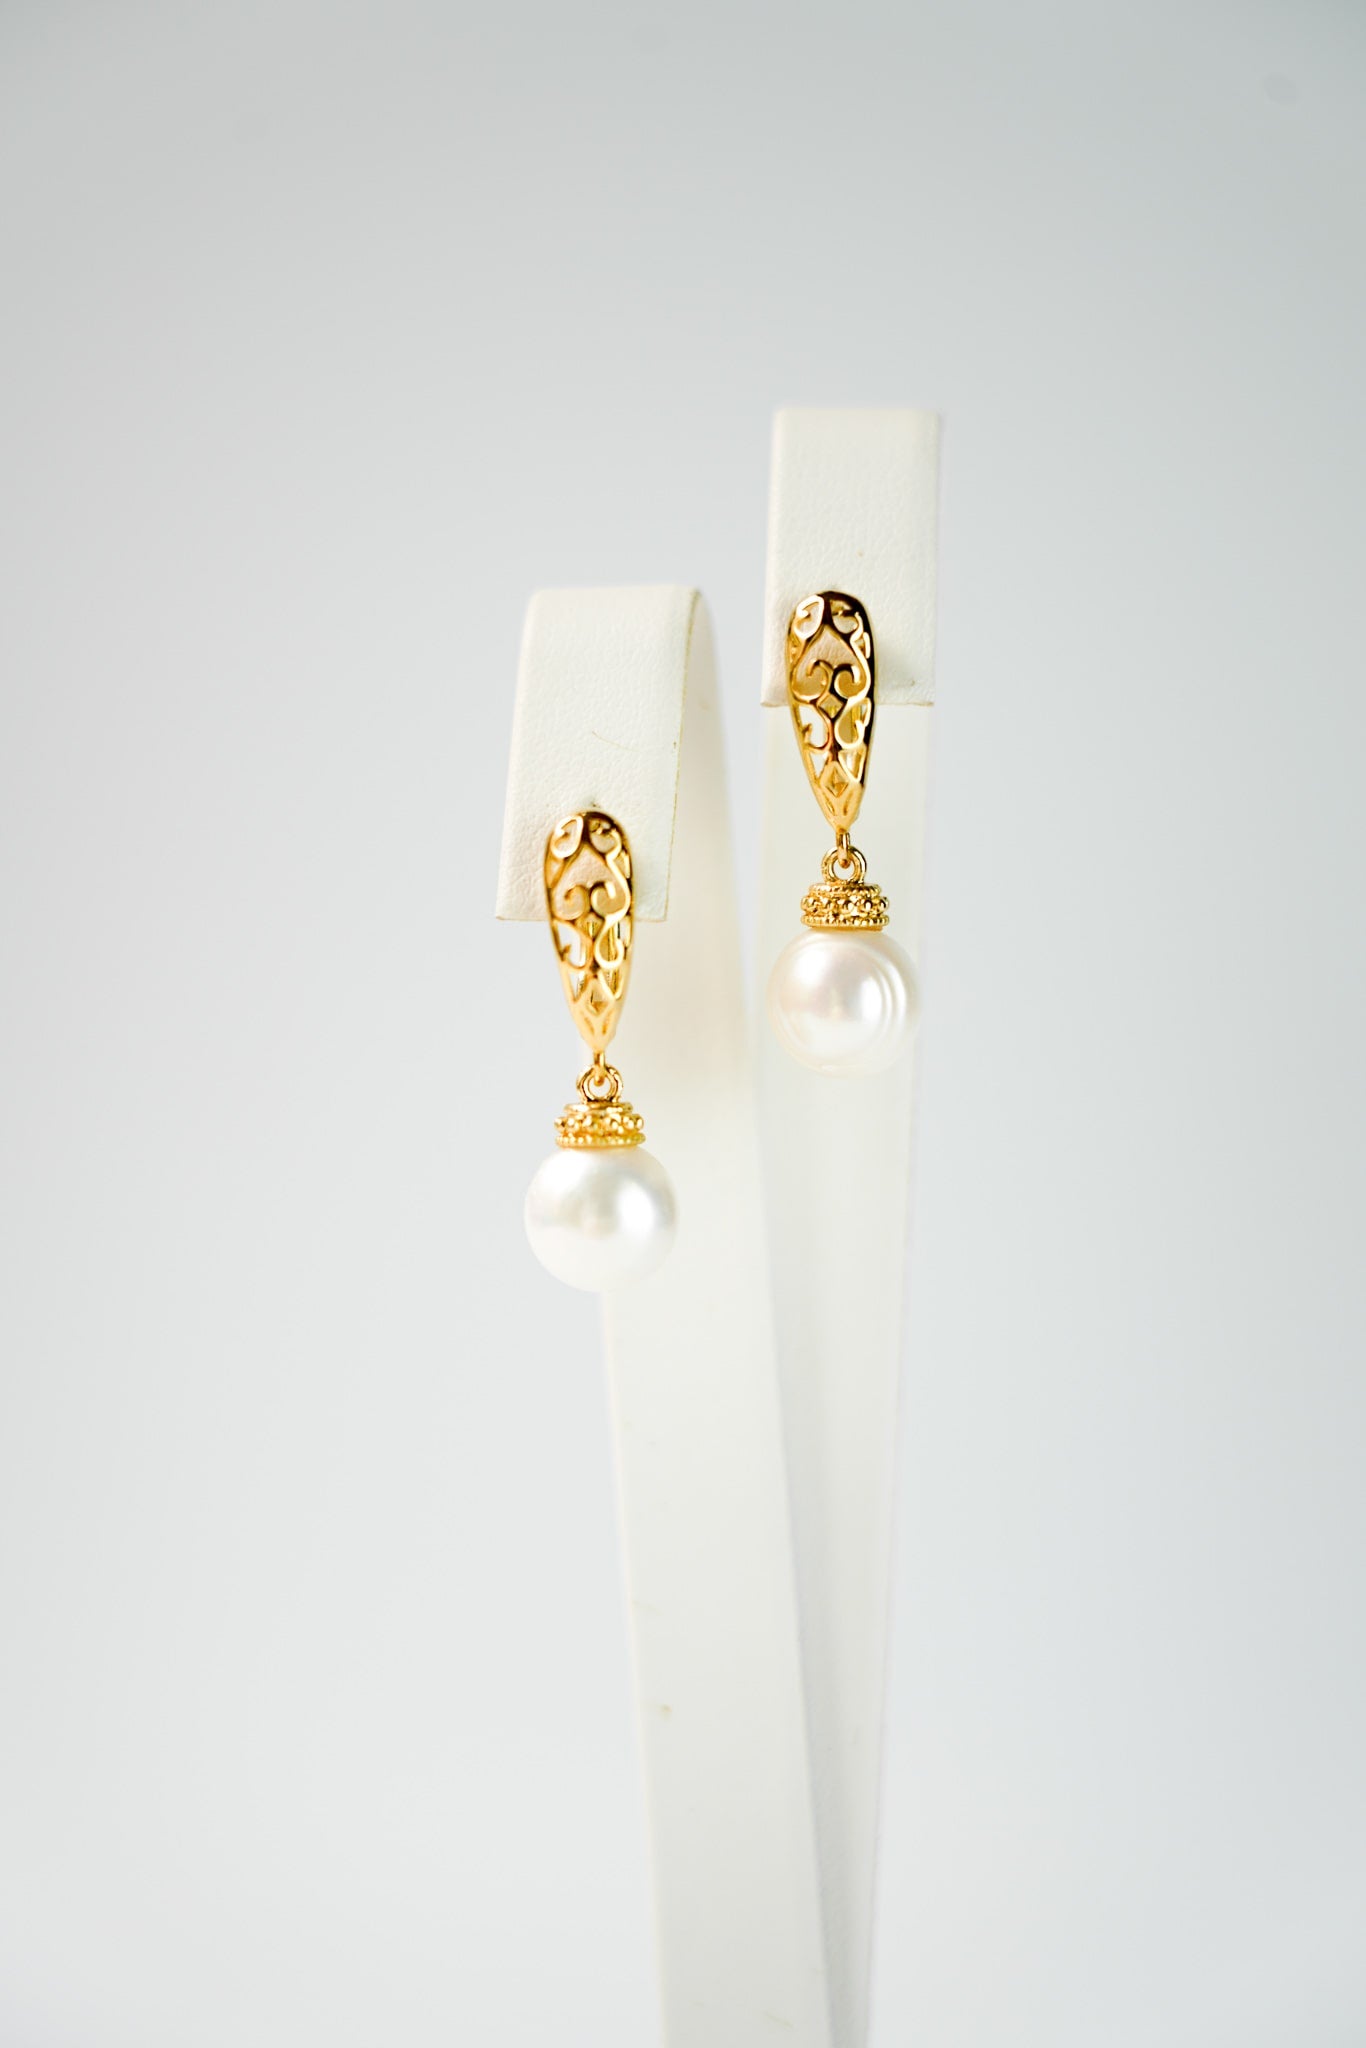 boucles d'oreilles vintage et bohème en or avec une perle naturelle et une attache avec des formes géométrique